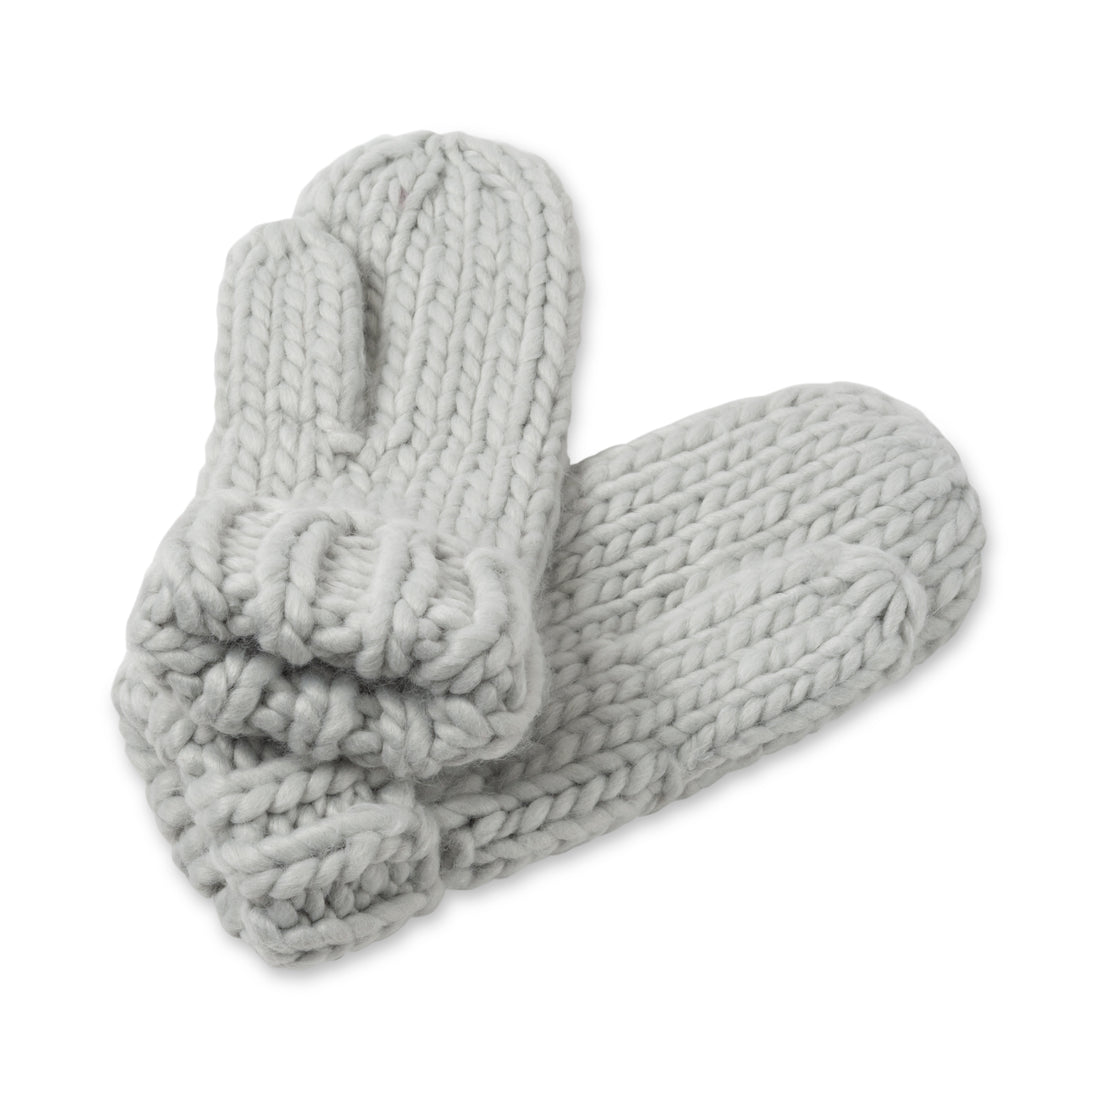 Hand Knit Glove